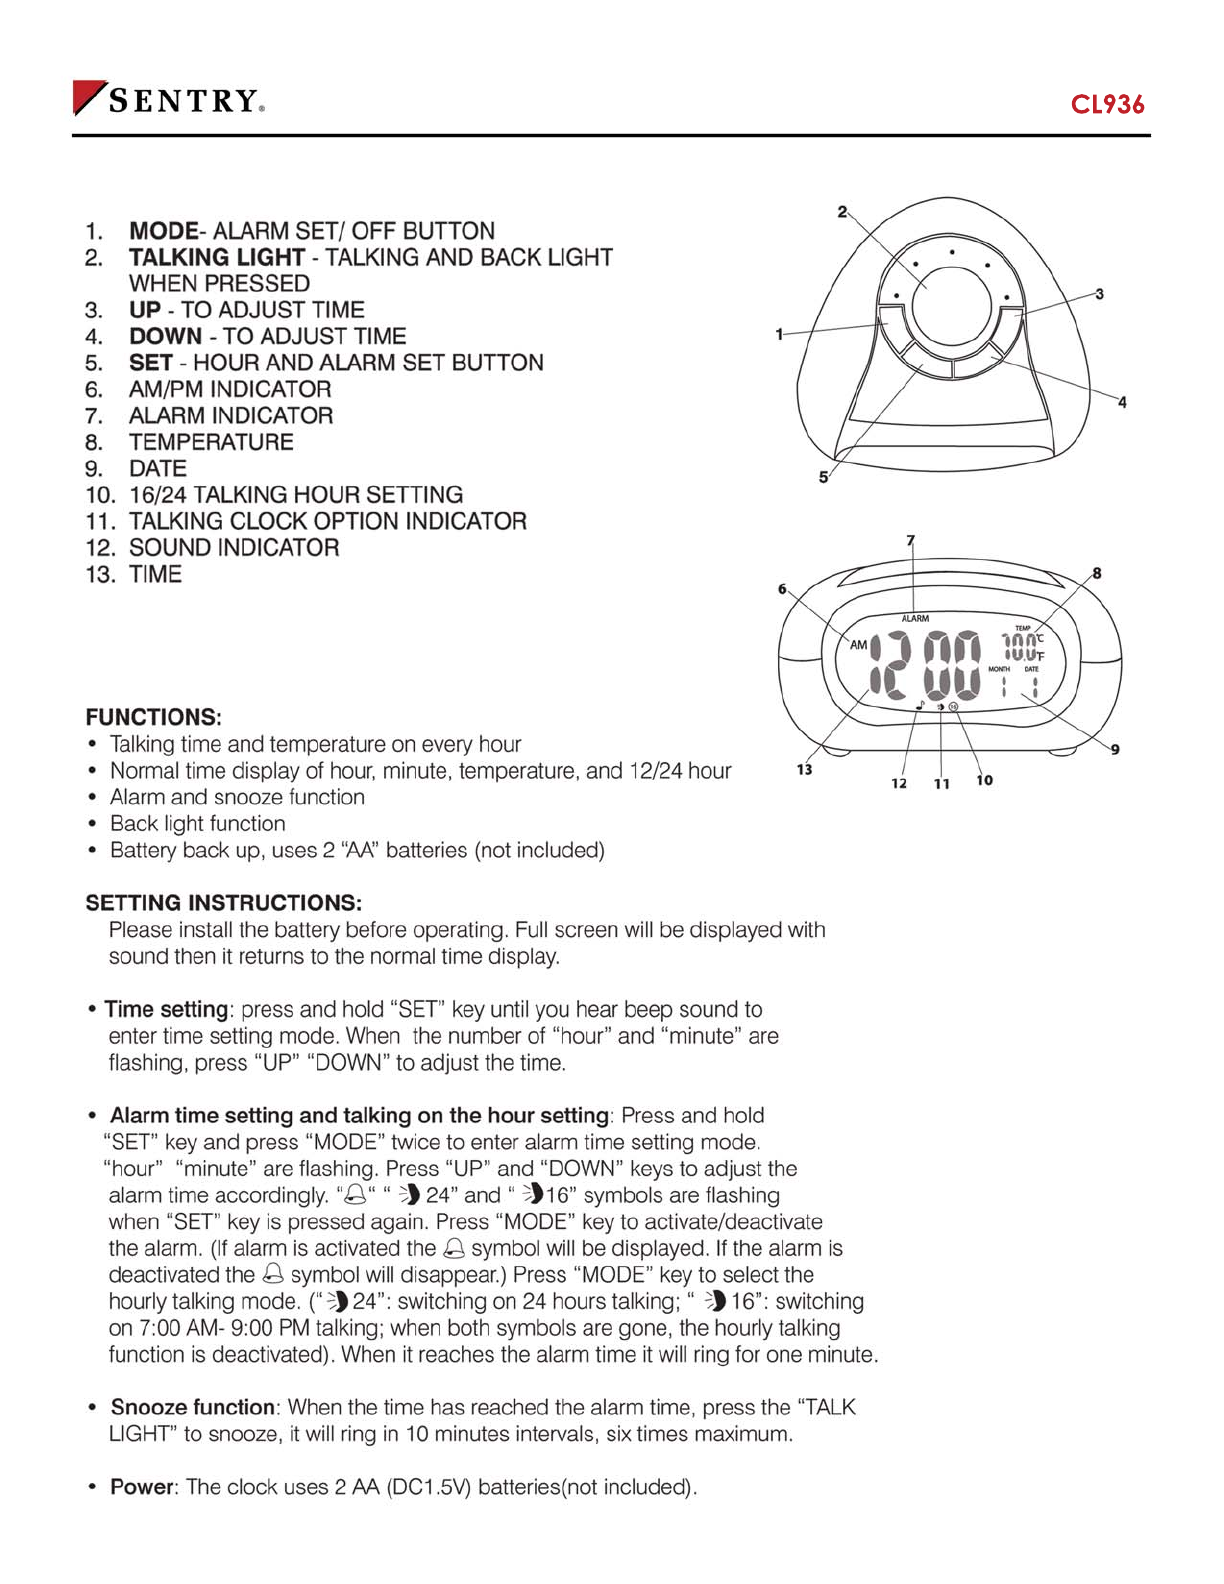 Radio controlled clock manual